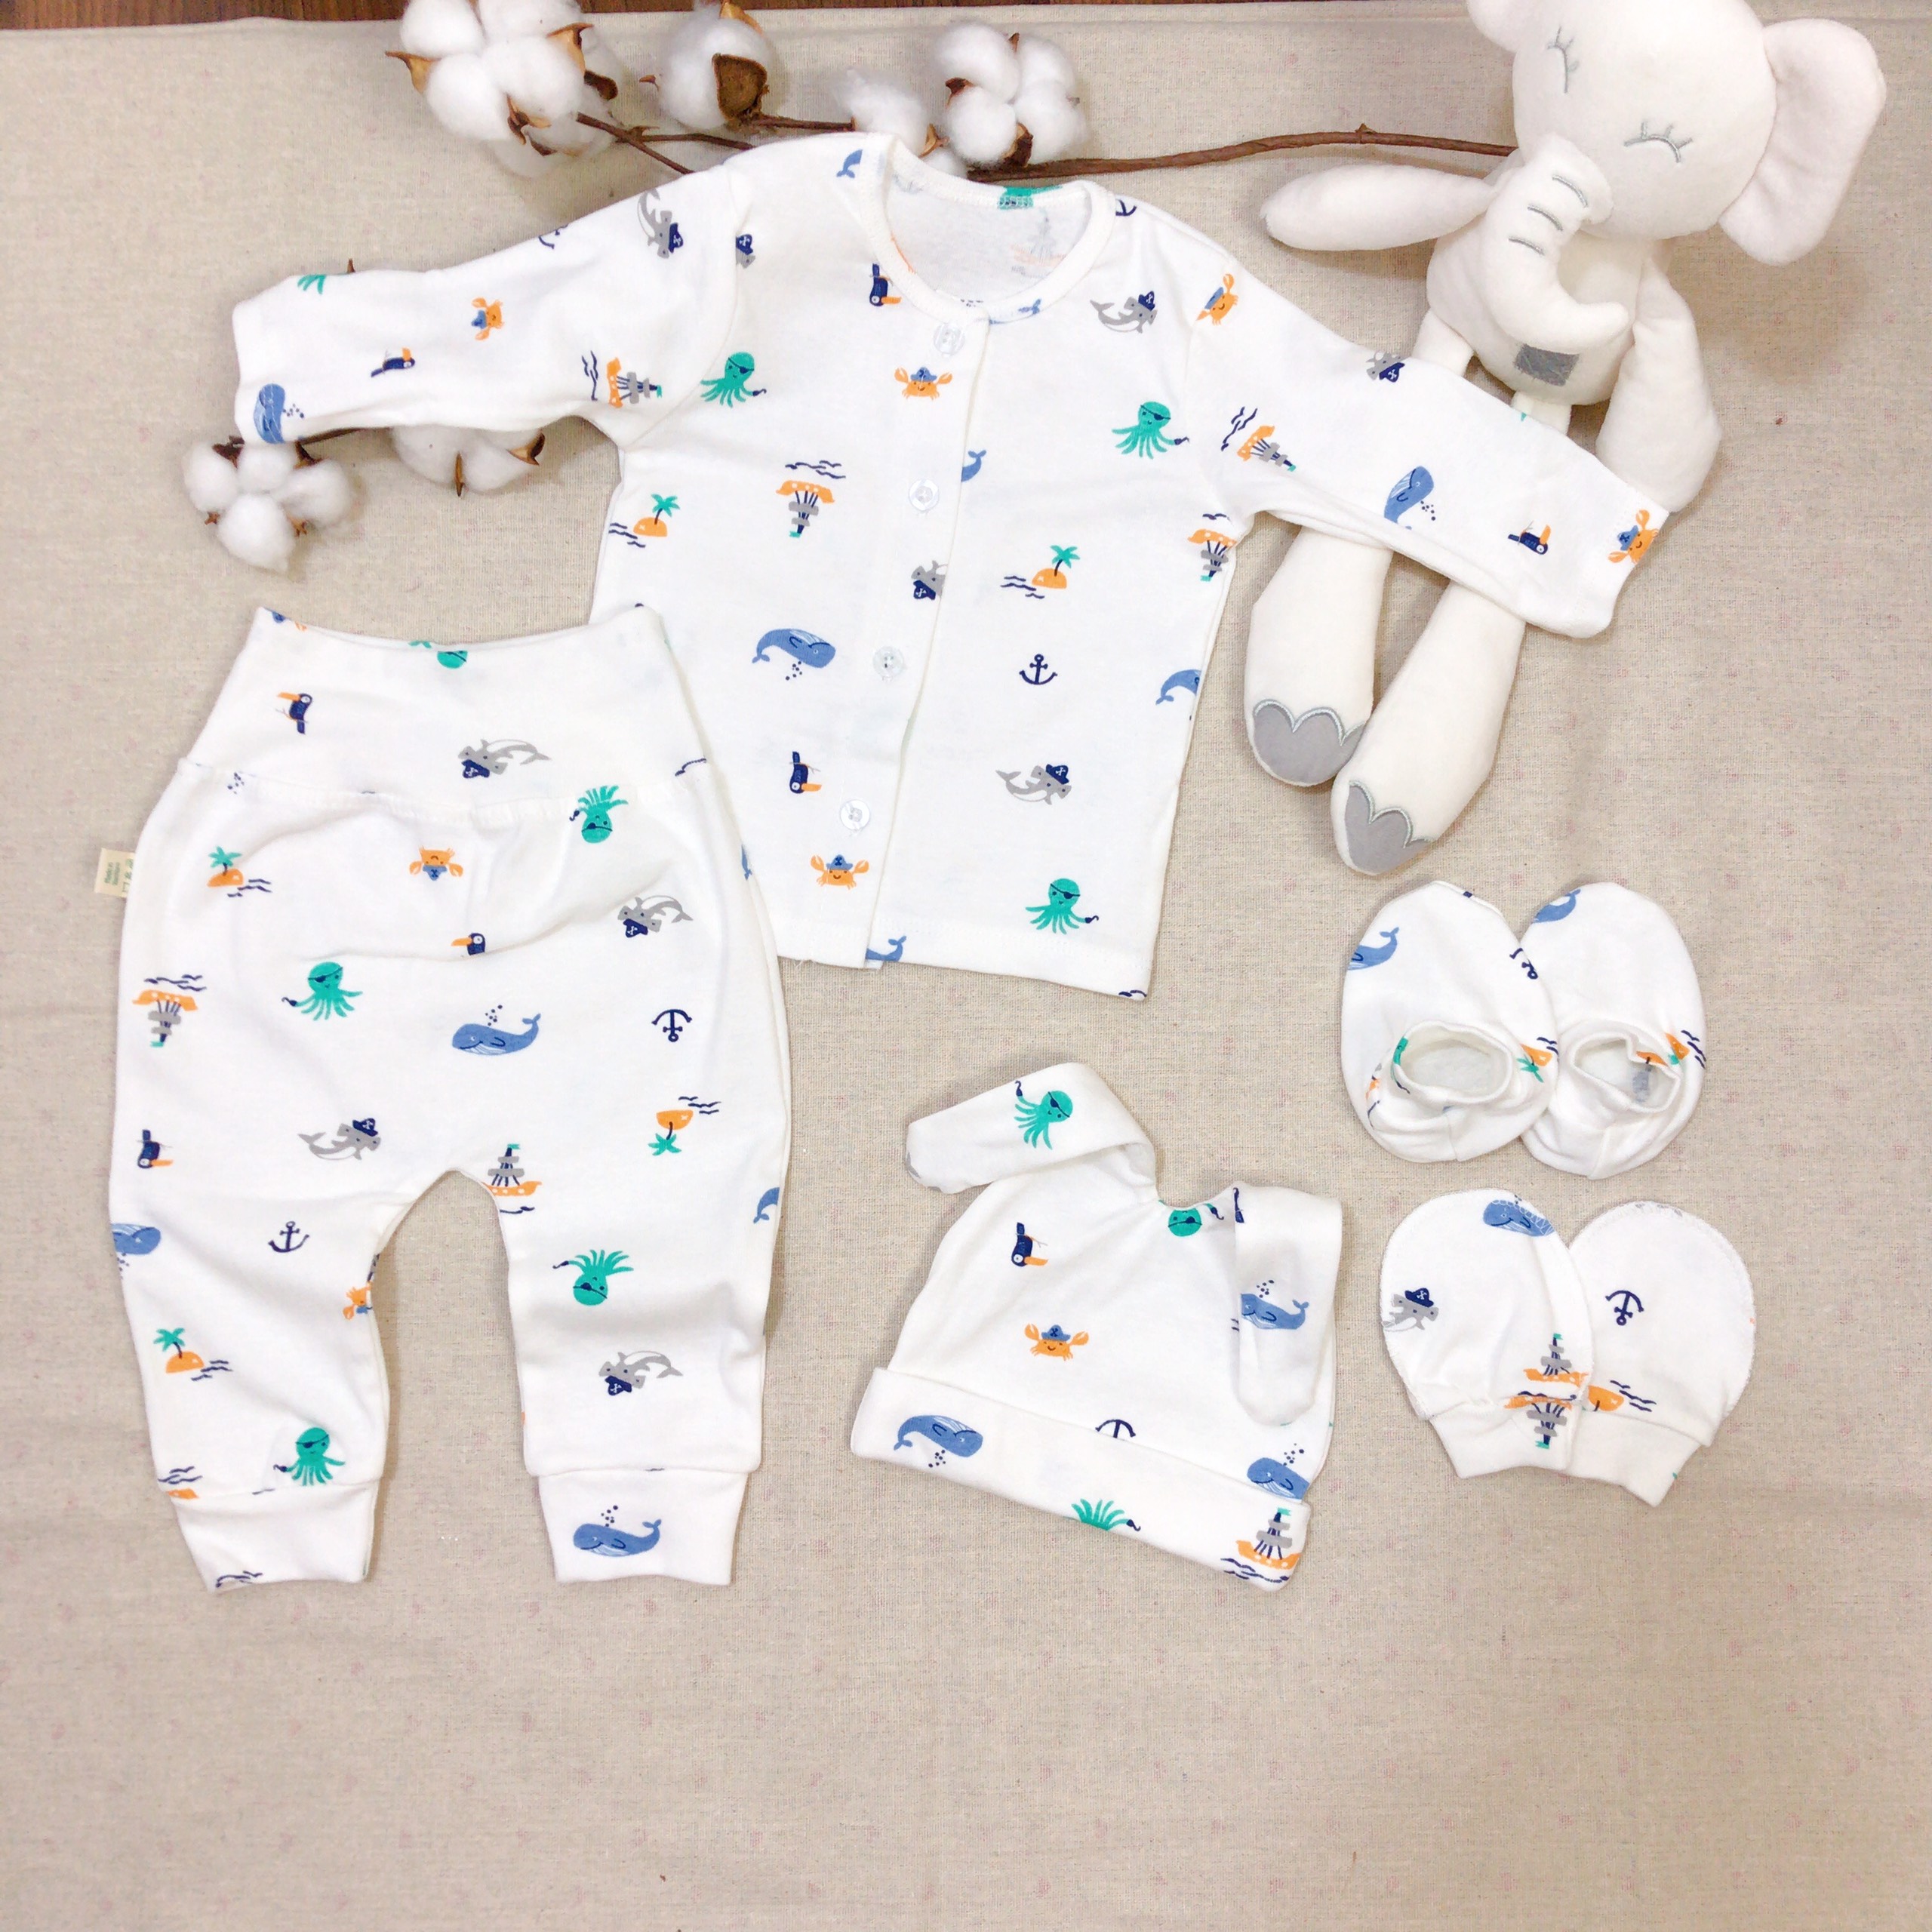 Set quần áo sơ sinh quần lưng cao thun cotton dành cho bé sơ sinh 0-3 tháng